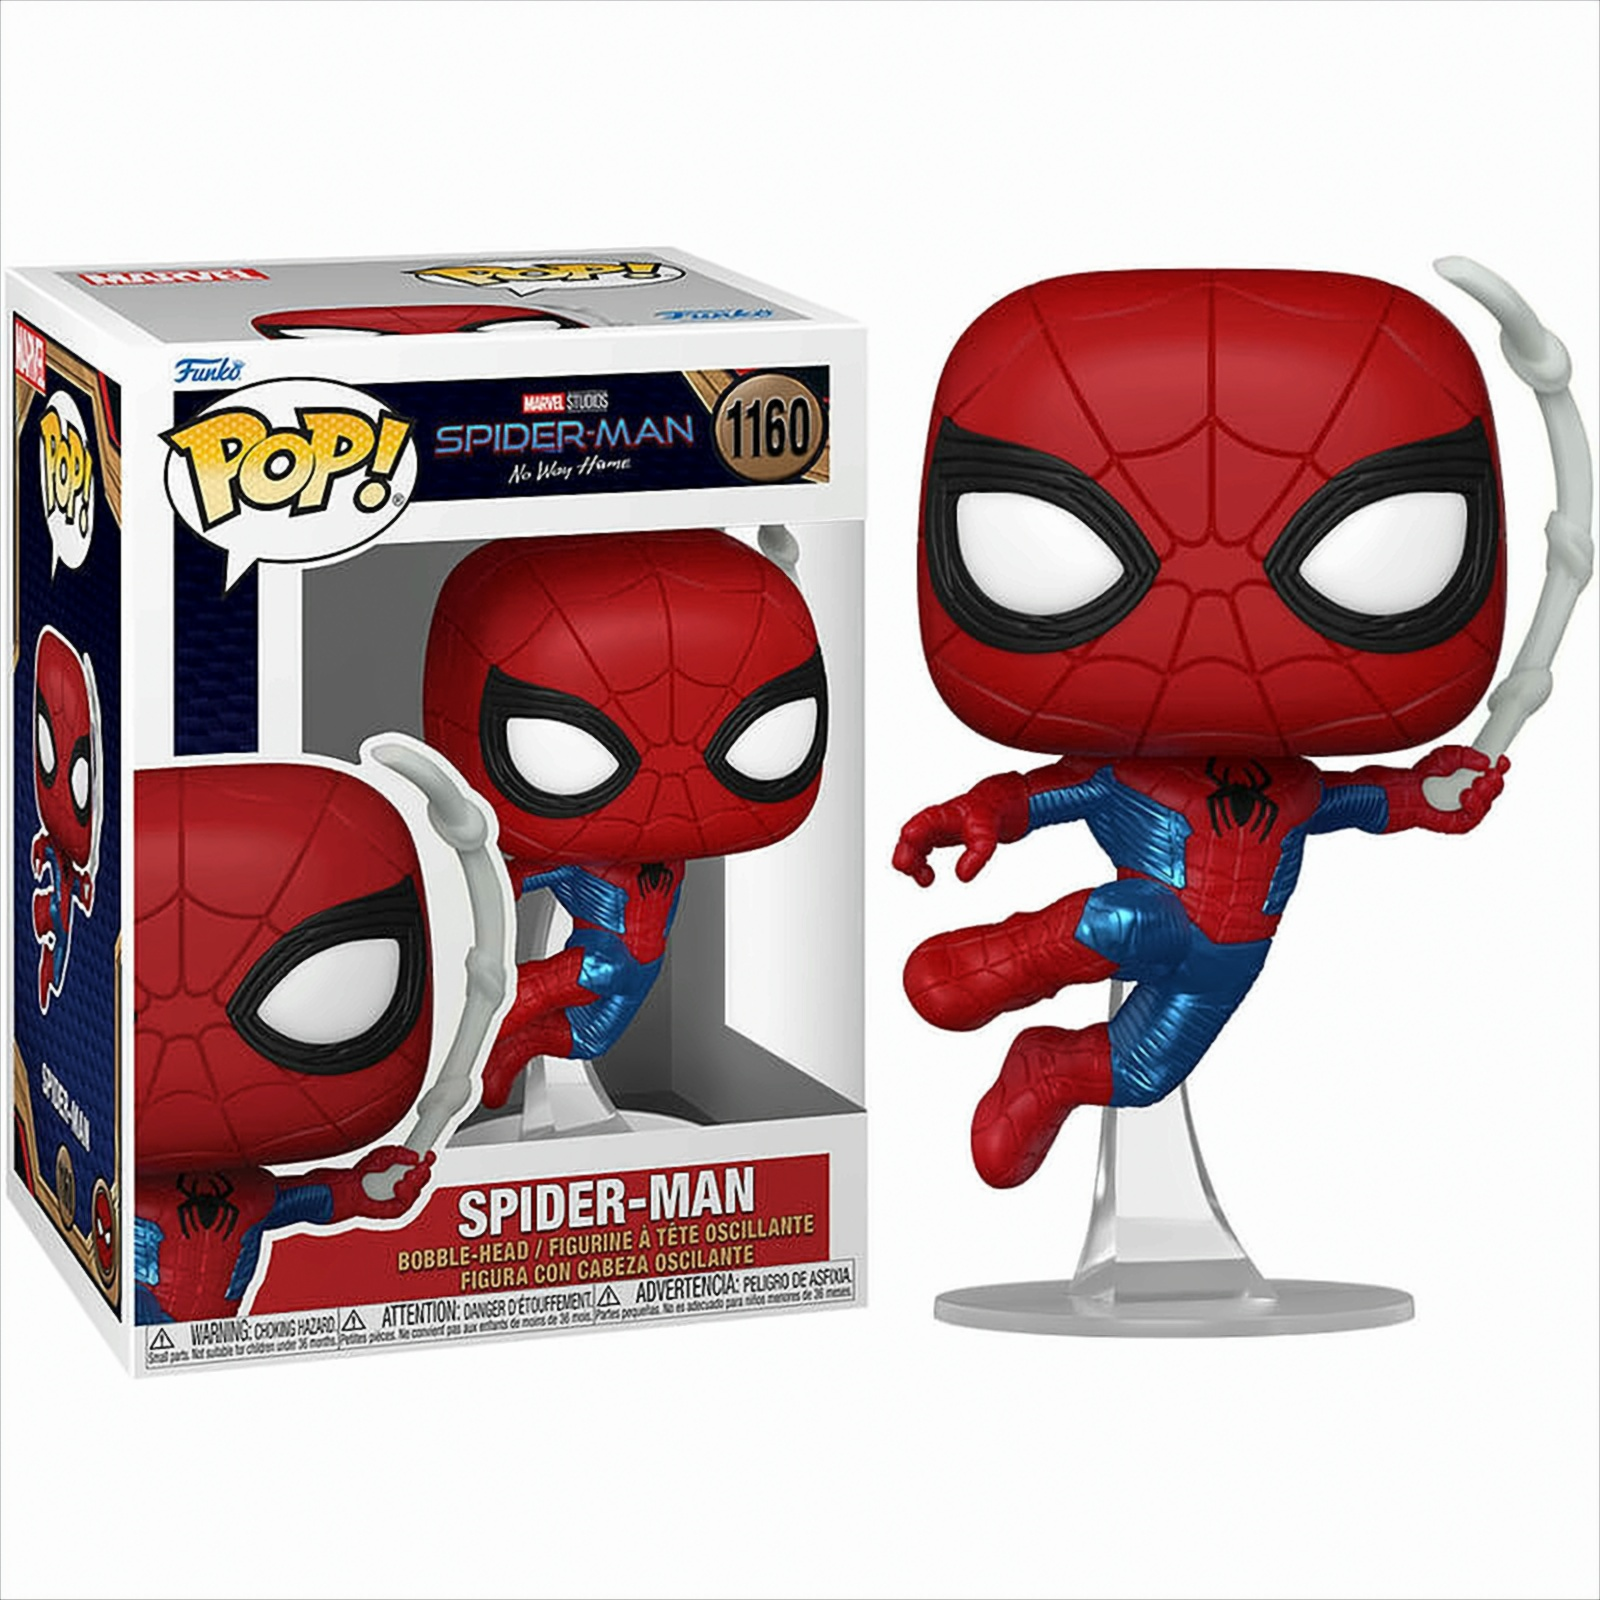 POP - Spider-Man No Way - Home Spider-Man